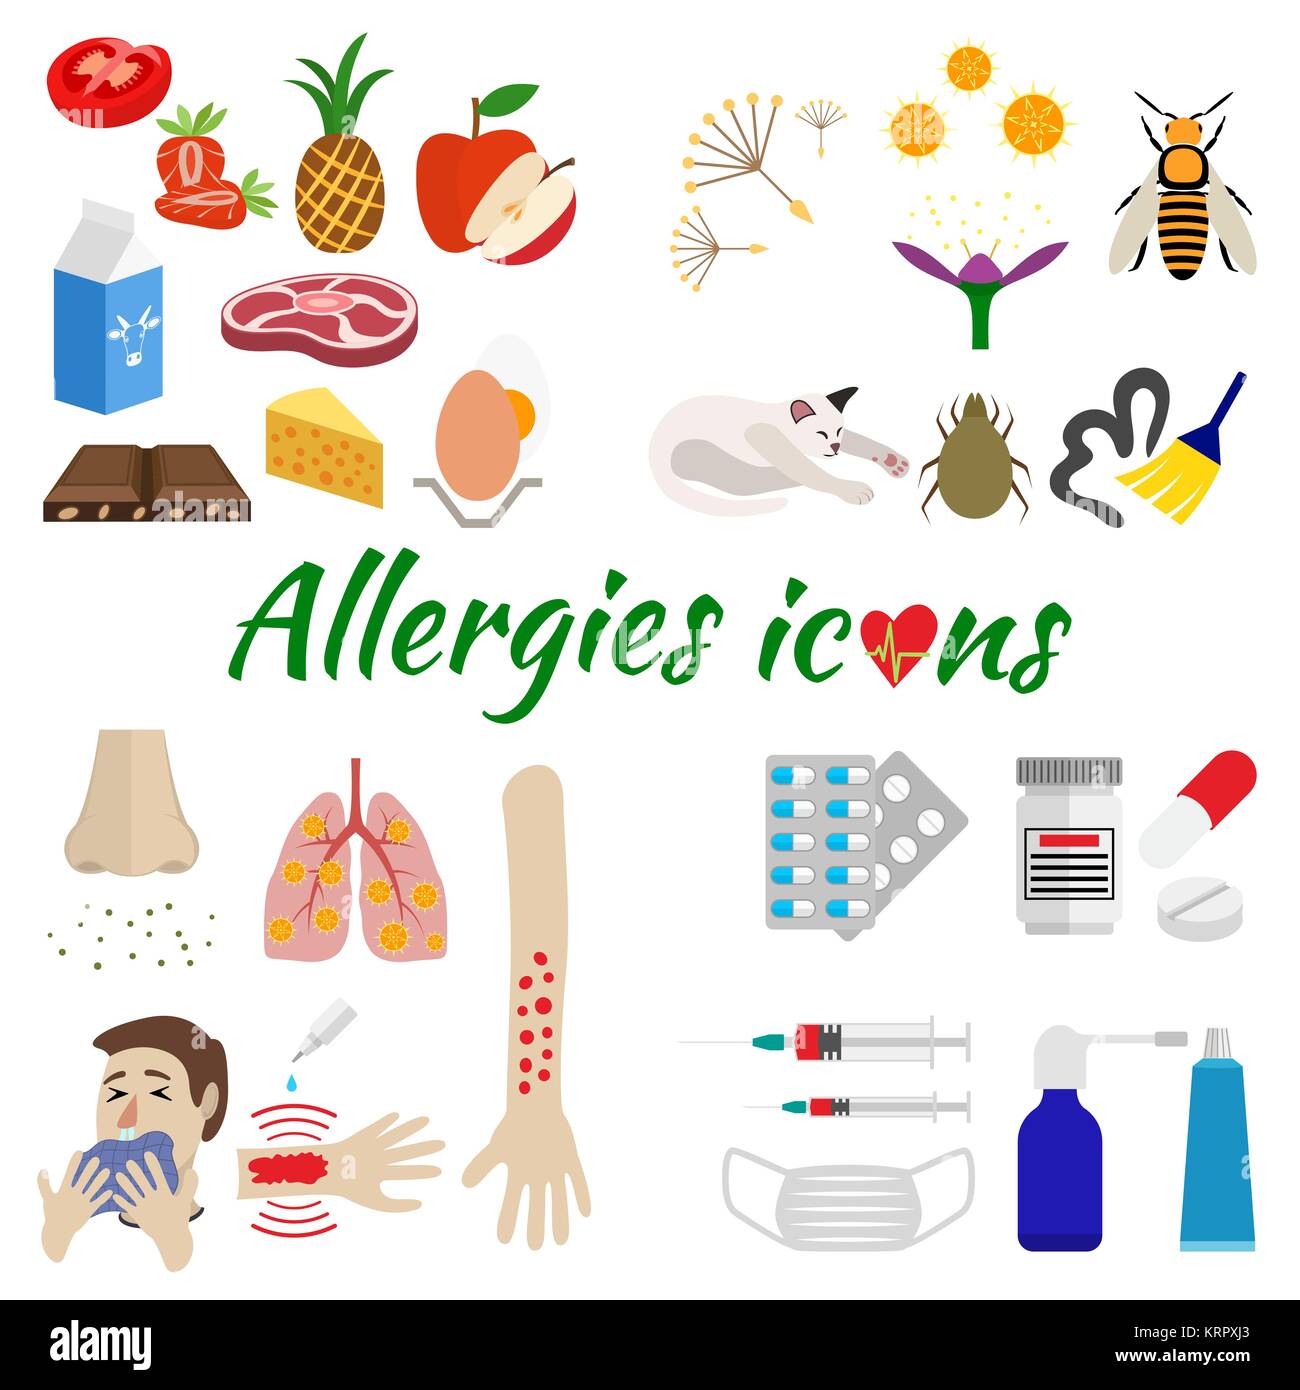 Die Icons sind allergische aufgeteilt nach Kategorie auf Allergene, Symptome und Behandlung. auf weißem Hintergrund Stock Vektor